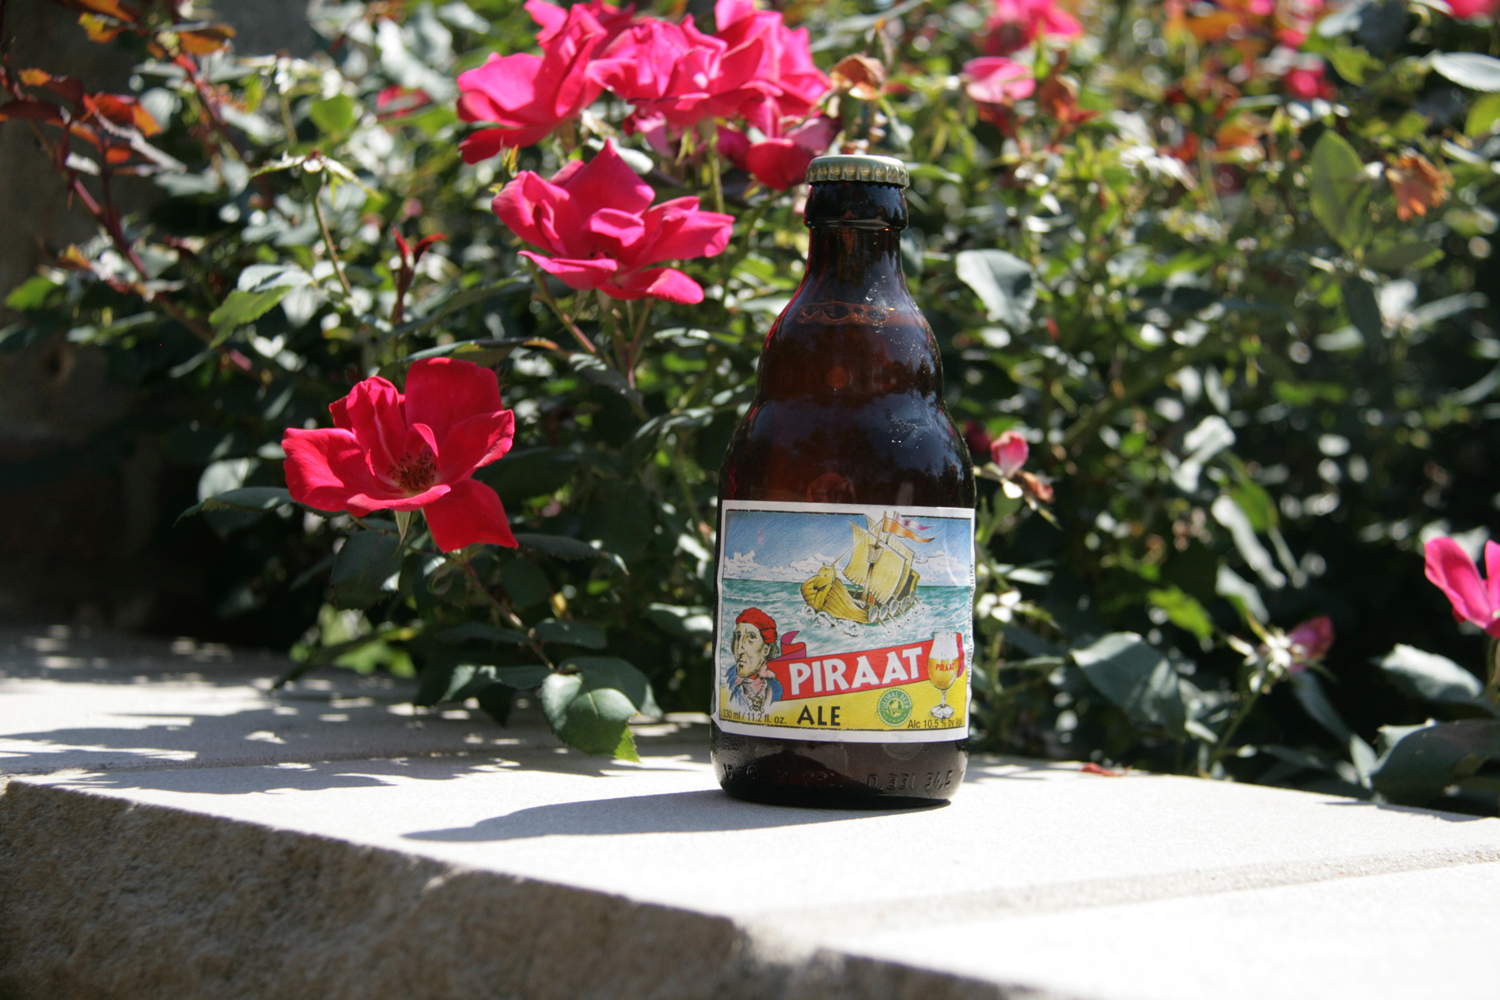 Summer Piraat beer Belgian Ale is popular worldwide.